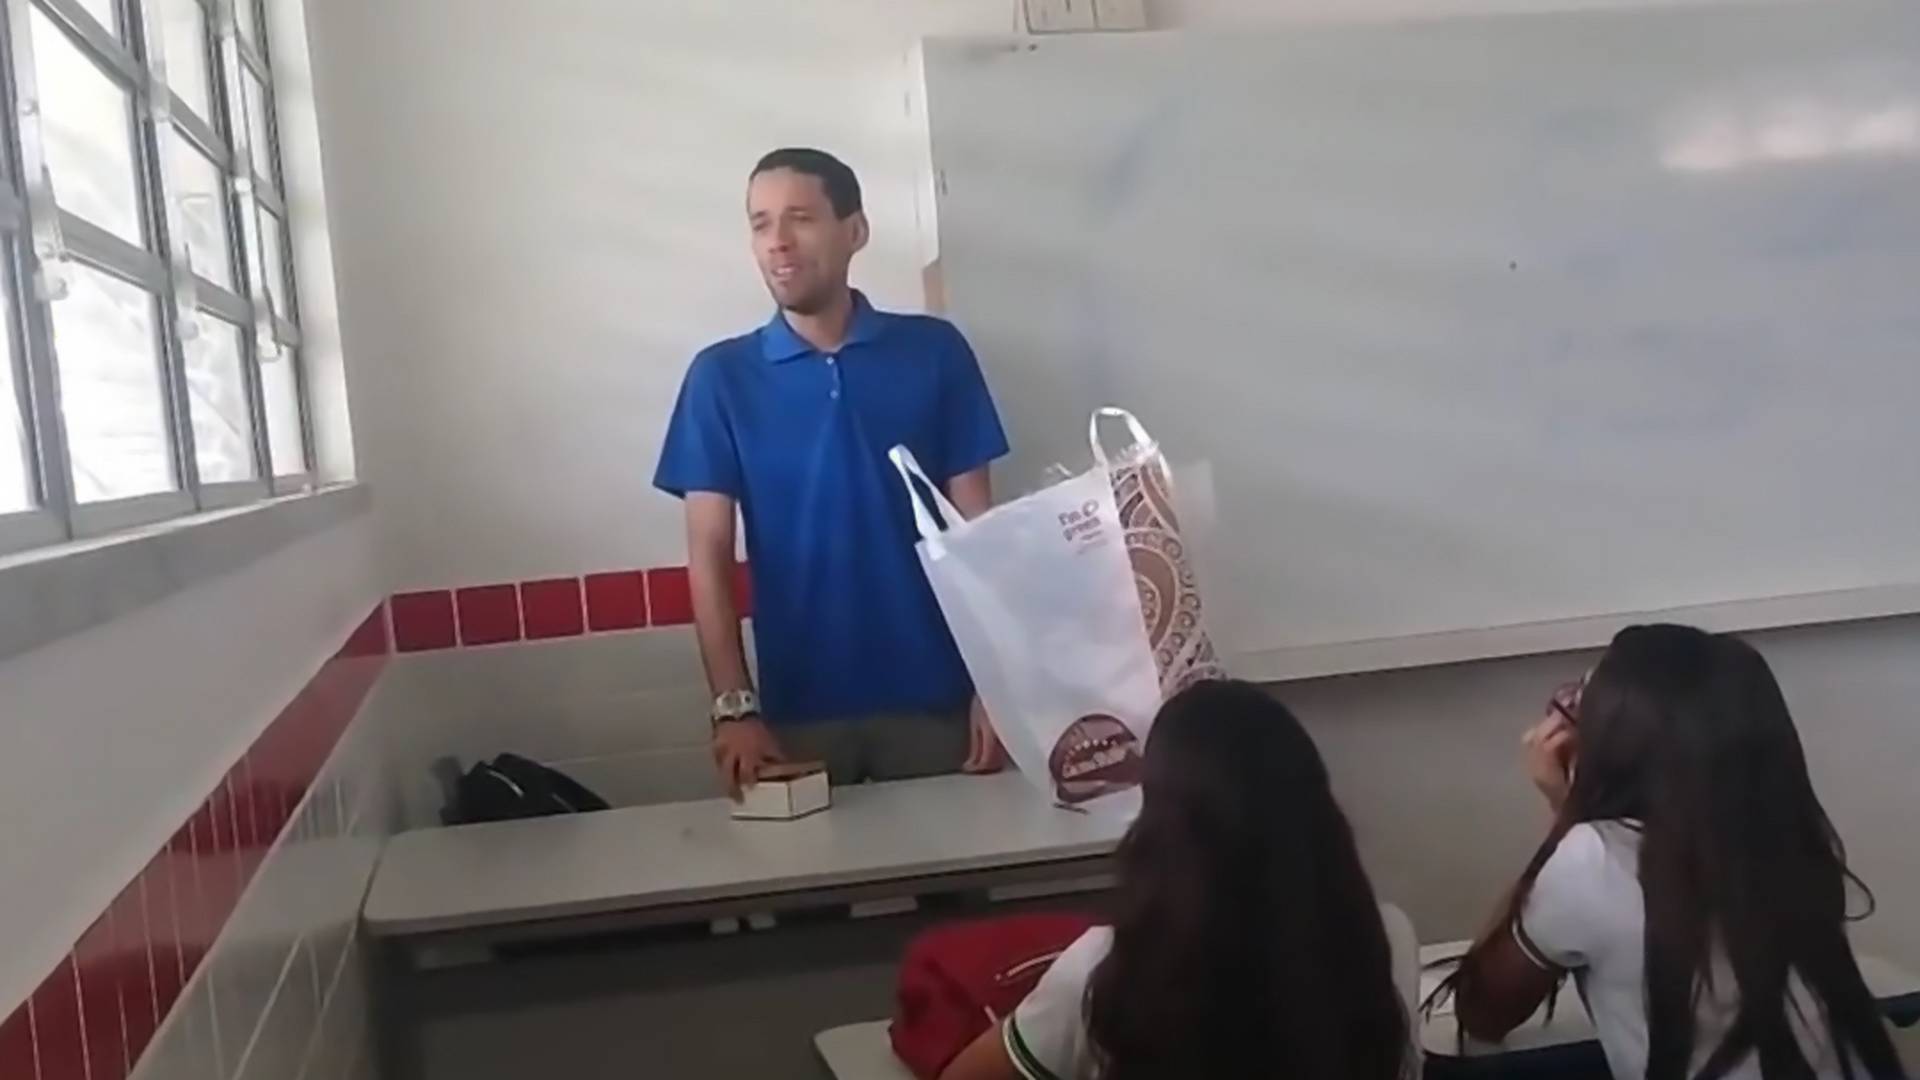 Učenici saznali da nastavnik živi i spava u školi pa mu priredili iznenađenje